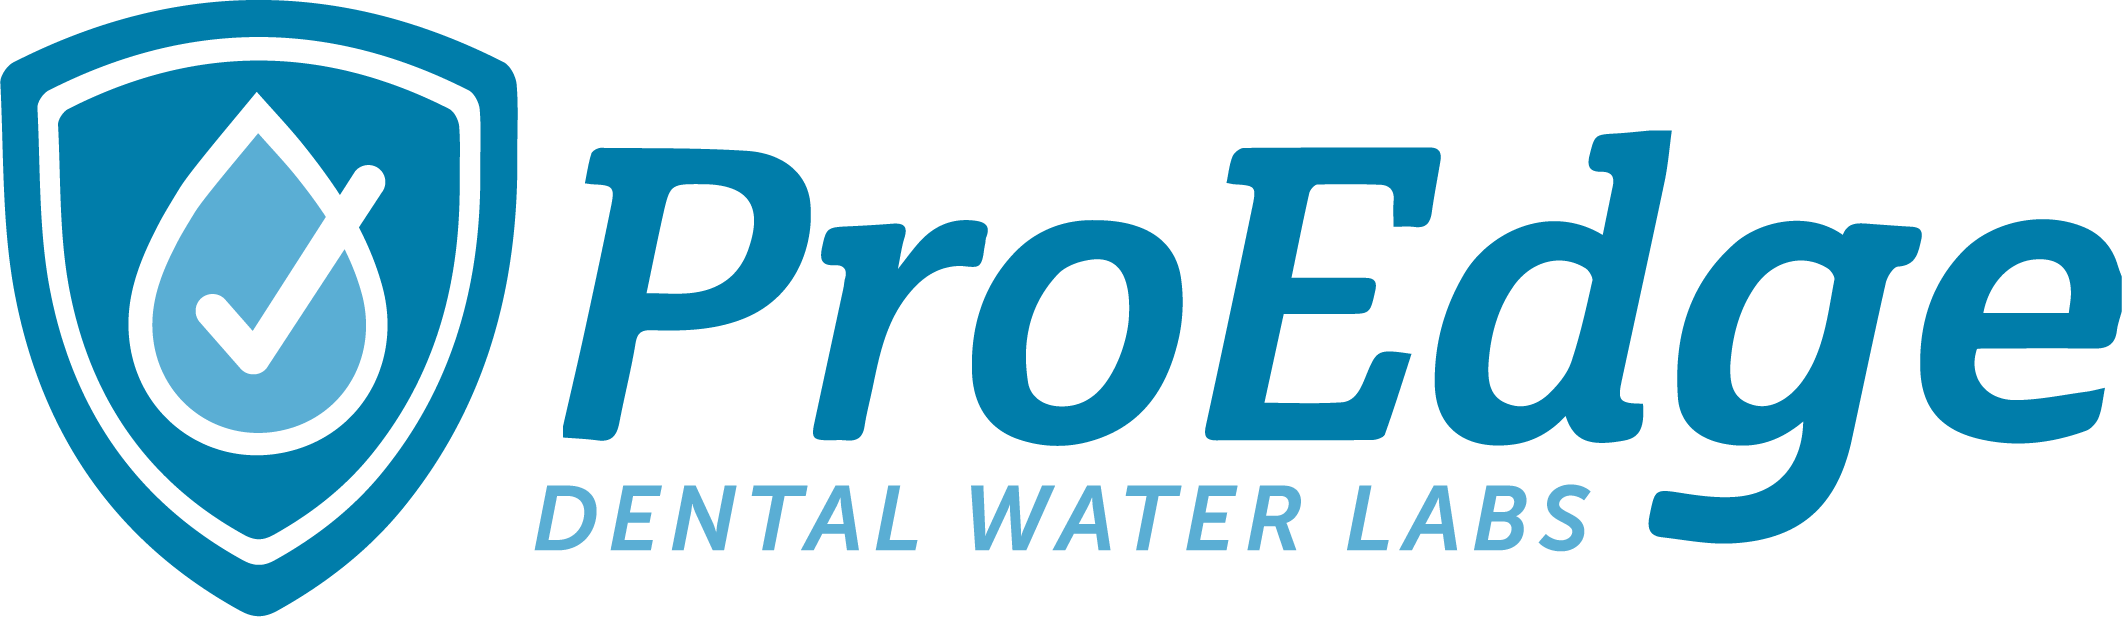 ProEdge Dental Water Labs